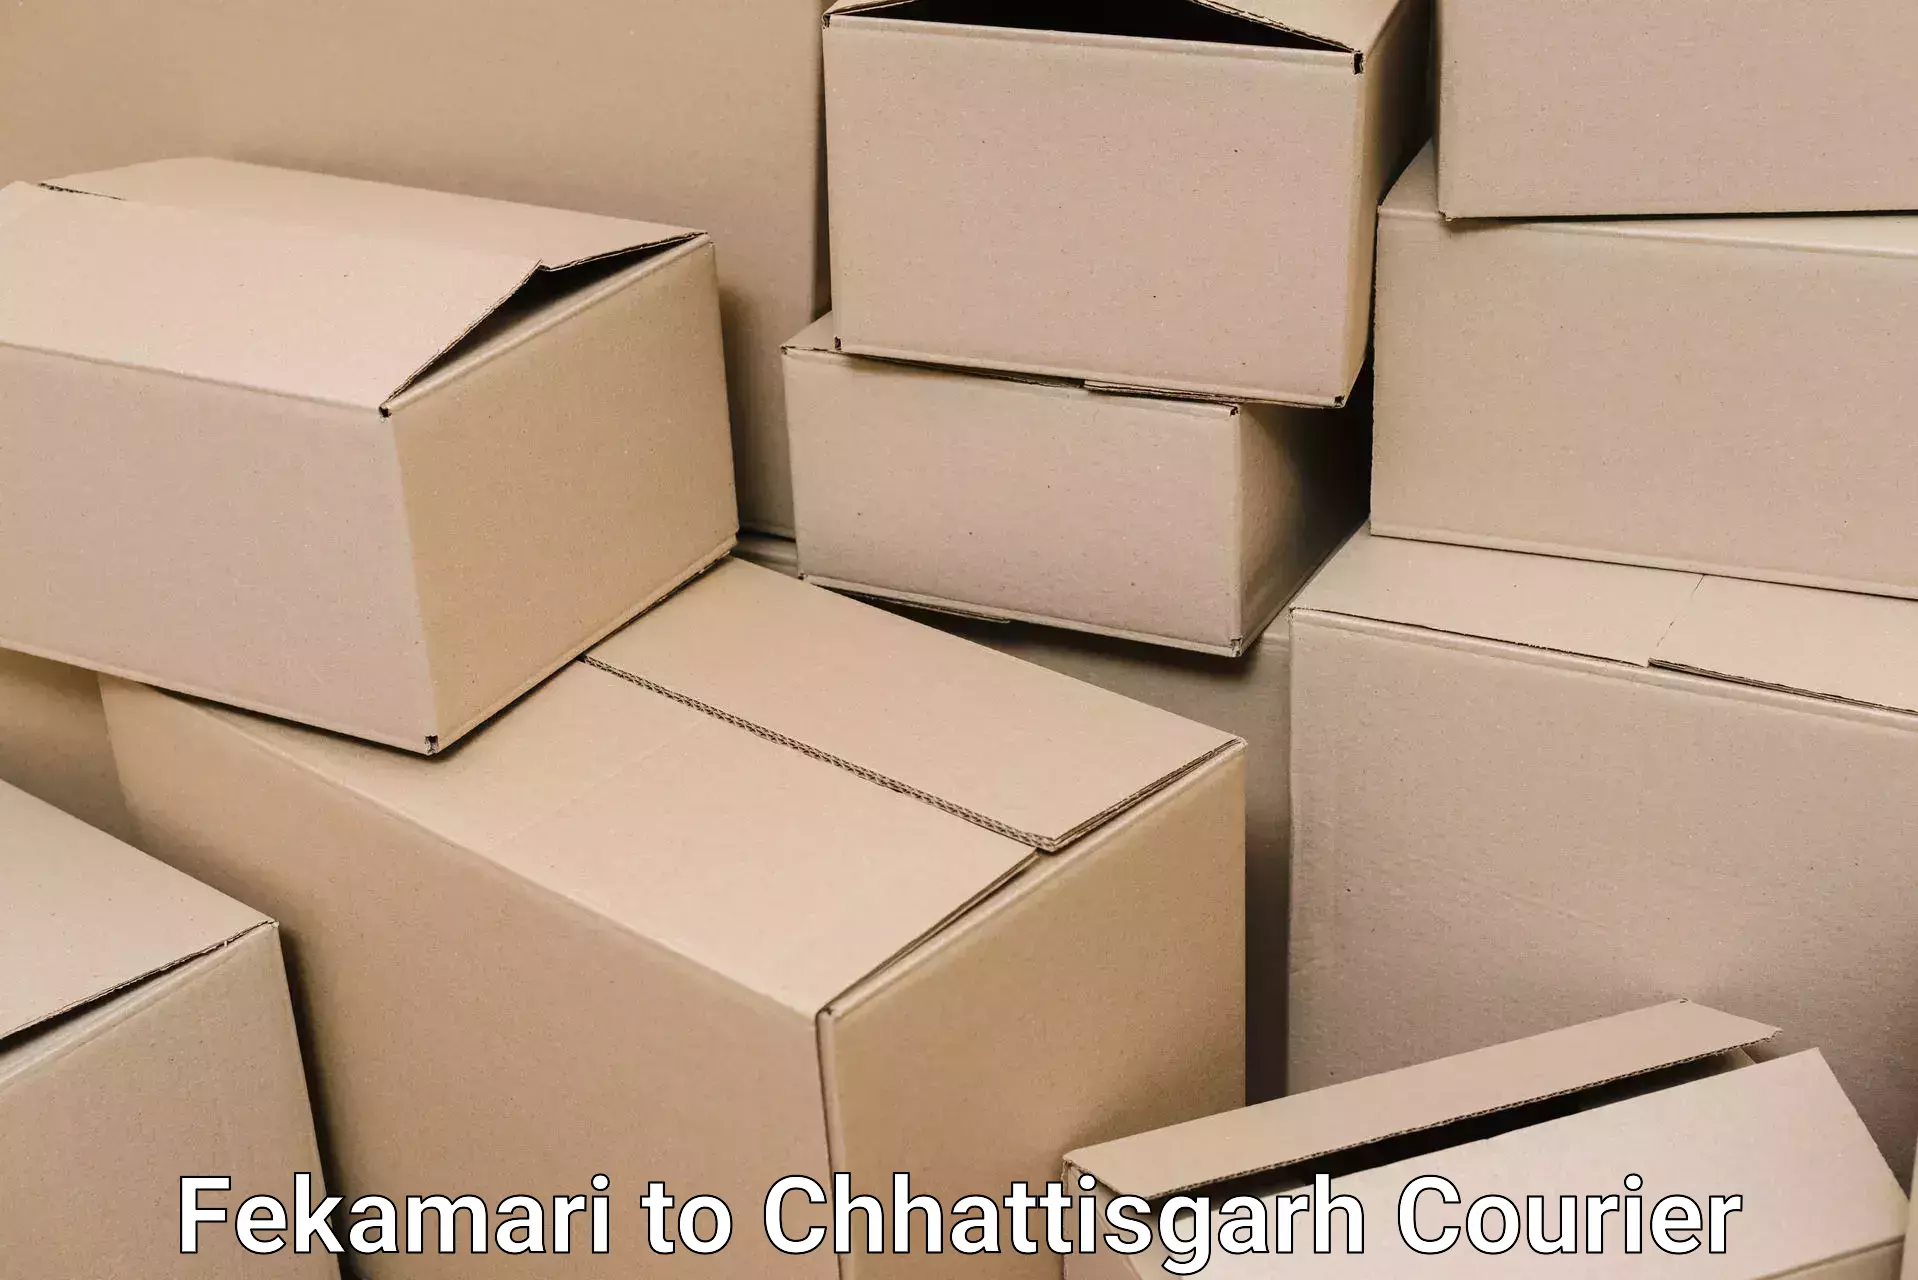 Furniture transport experts Fekamari to Chhattisgarh